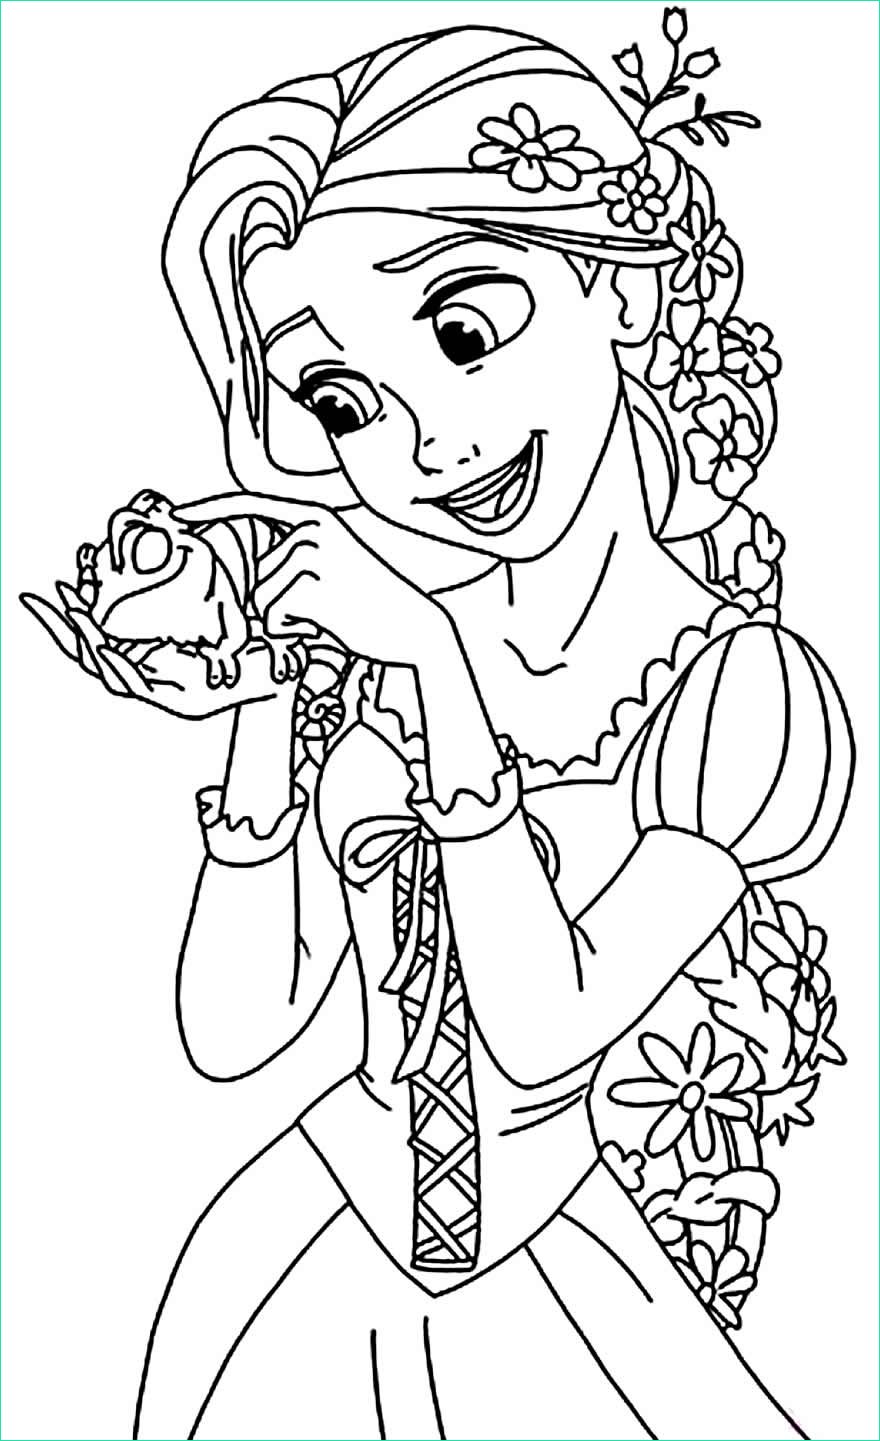 Dessin A Colorier Disney Princesse Raiponce Beau Images Coloriages Raiponce Maison Bonte Votre Guide